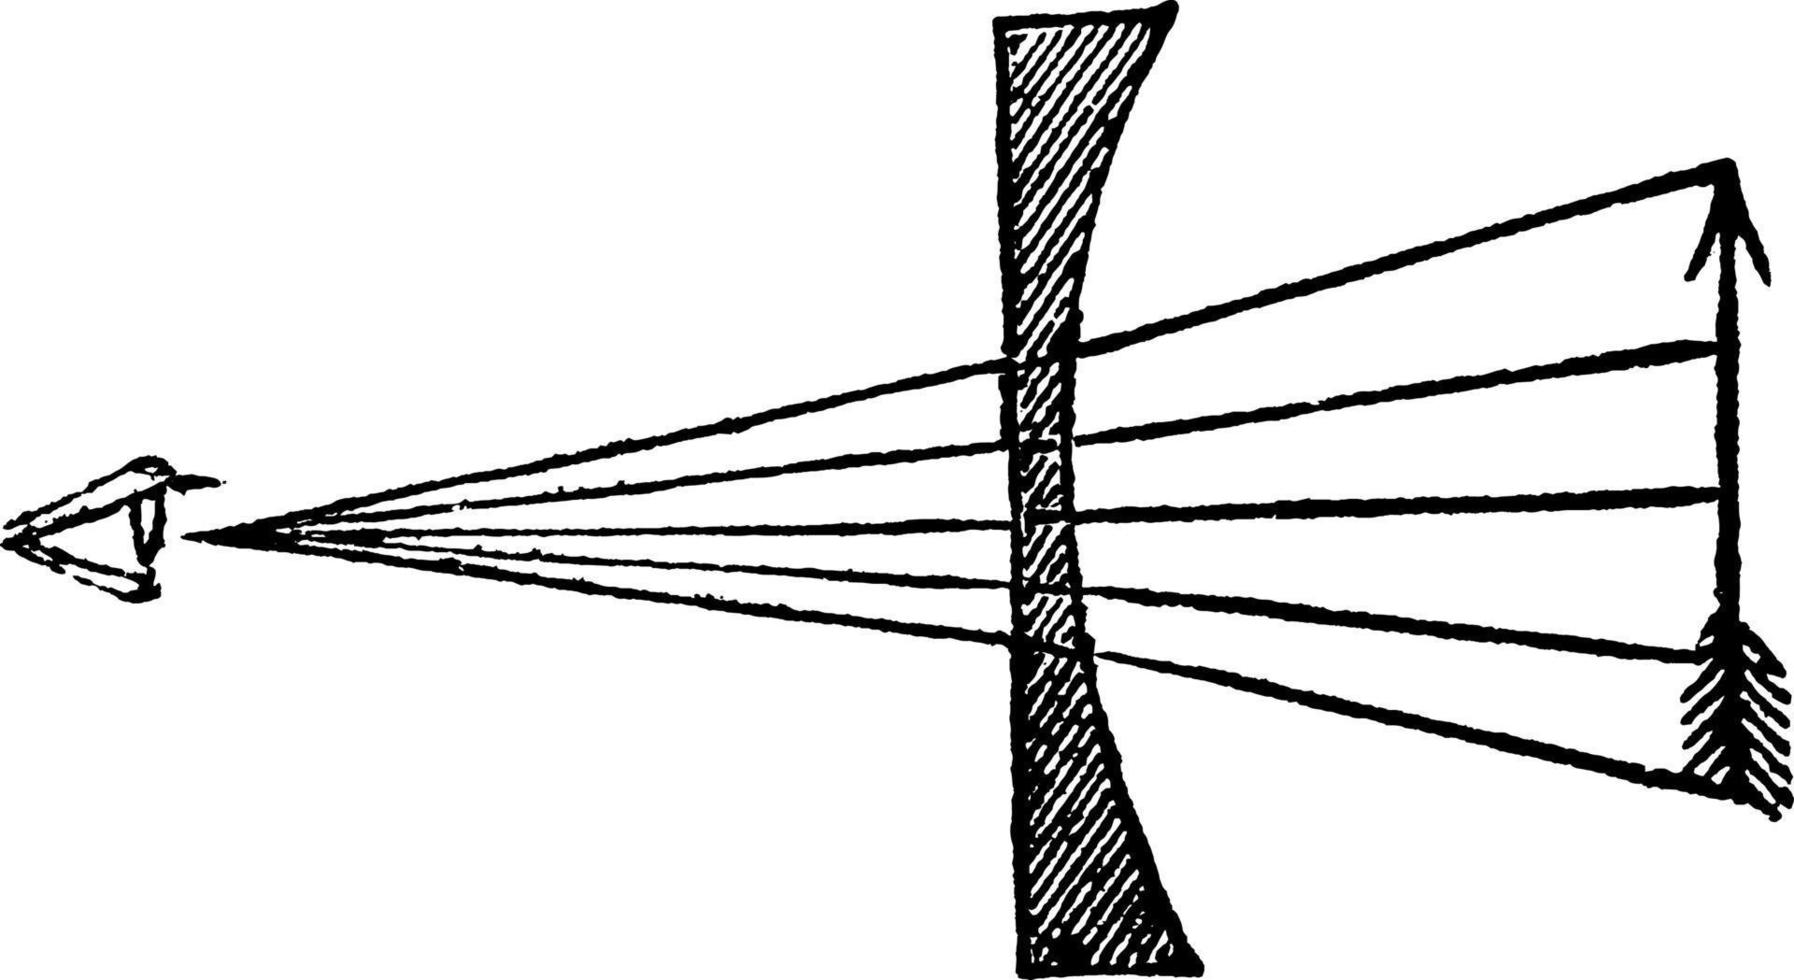 vista de uma flecha através de uma lente plano convexa, ilustração vintage. vetor